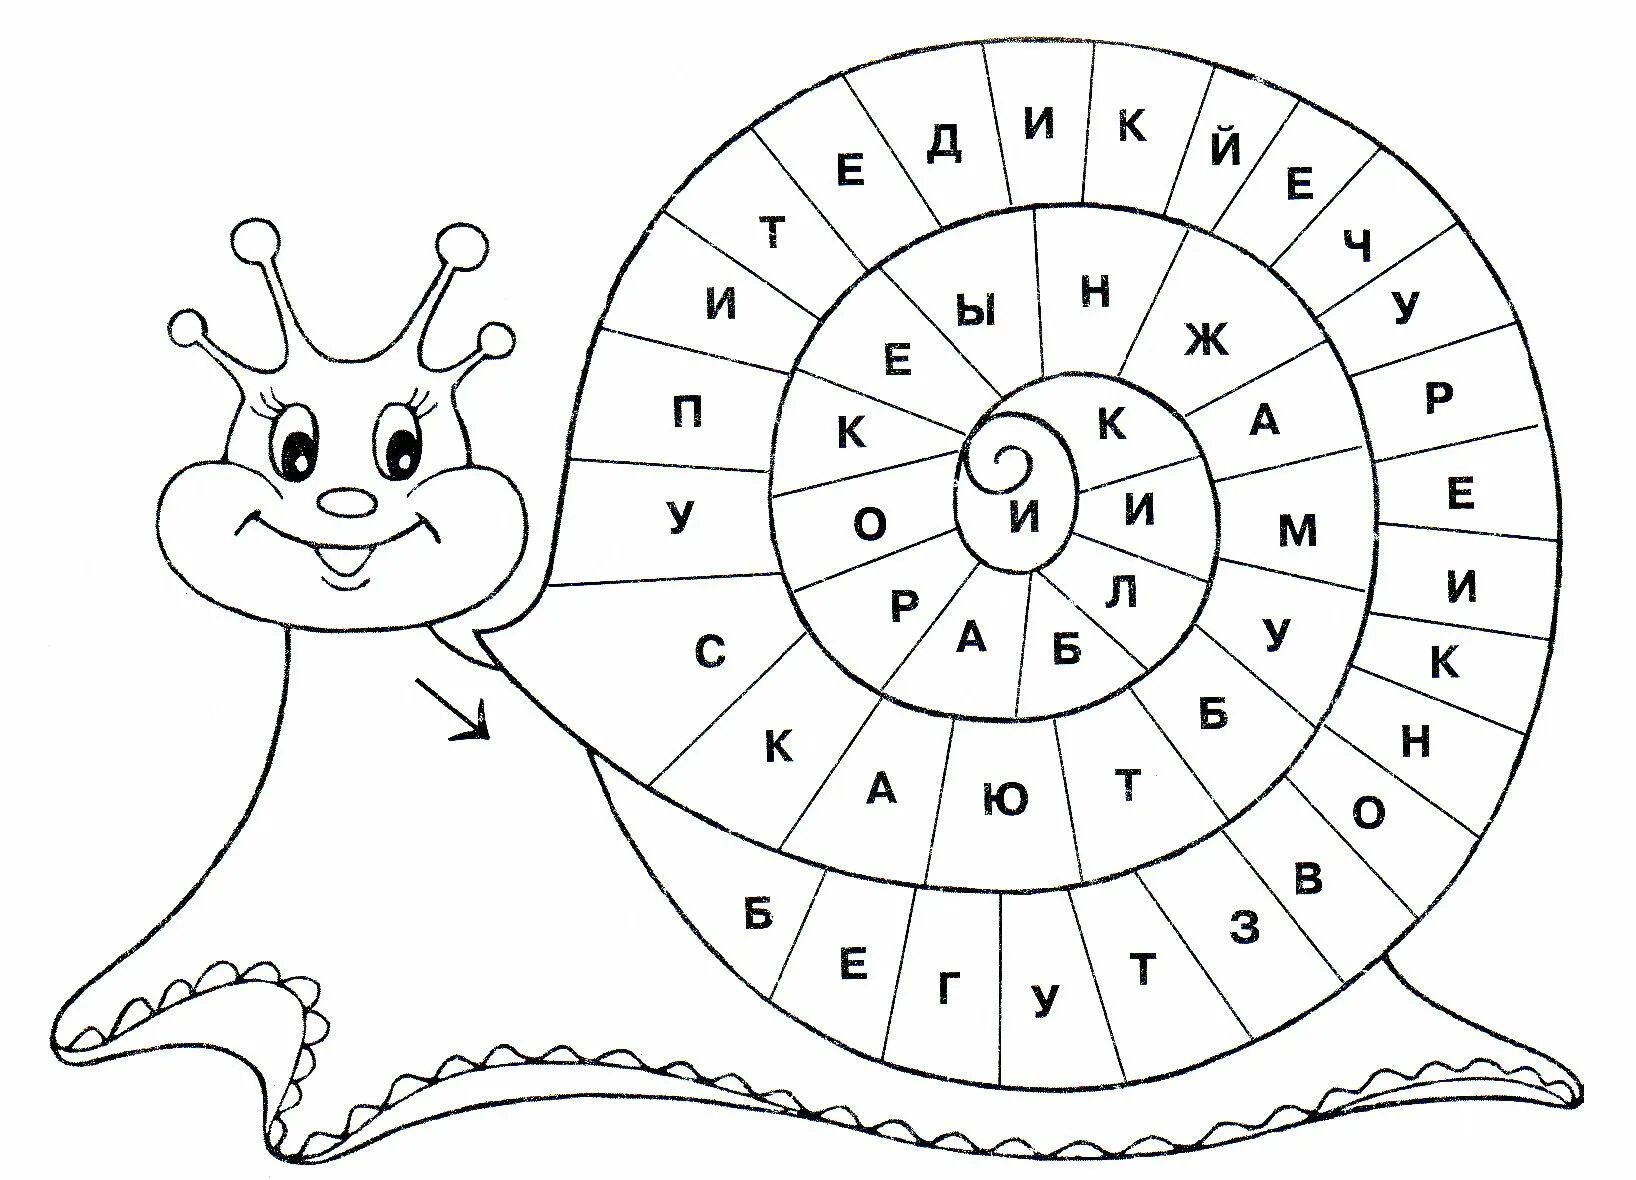 Найти слово занятие. Необычные задания для дошкольников. Раскраска по буквам. Занимательный русский язык для детей задания. Занимательные занятия для детей 7 лет.